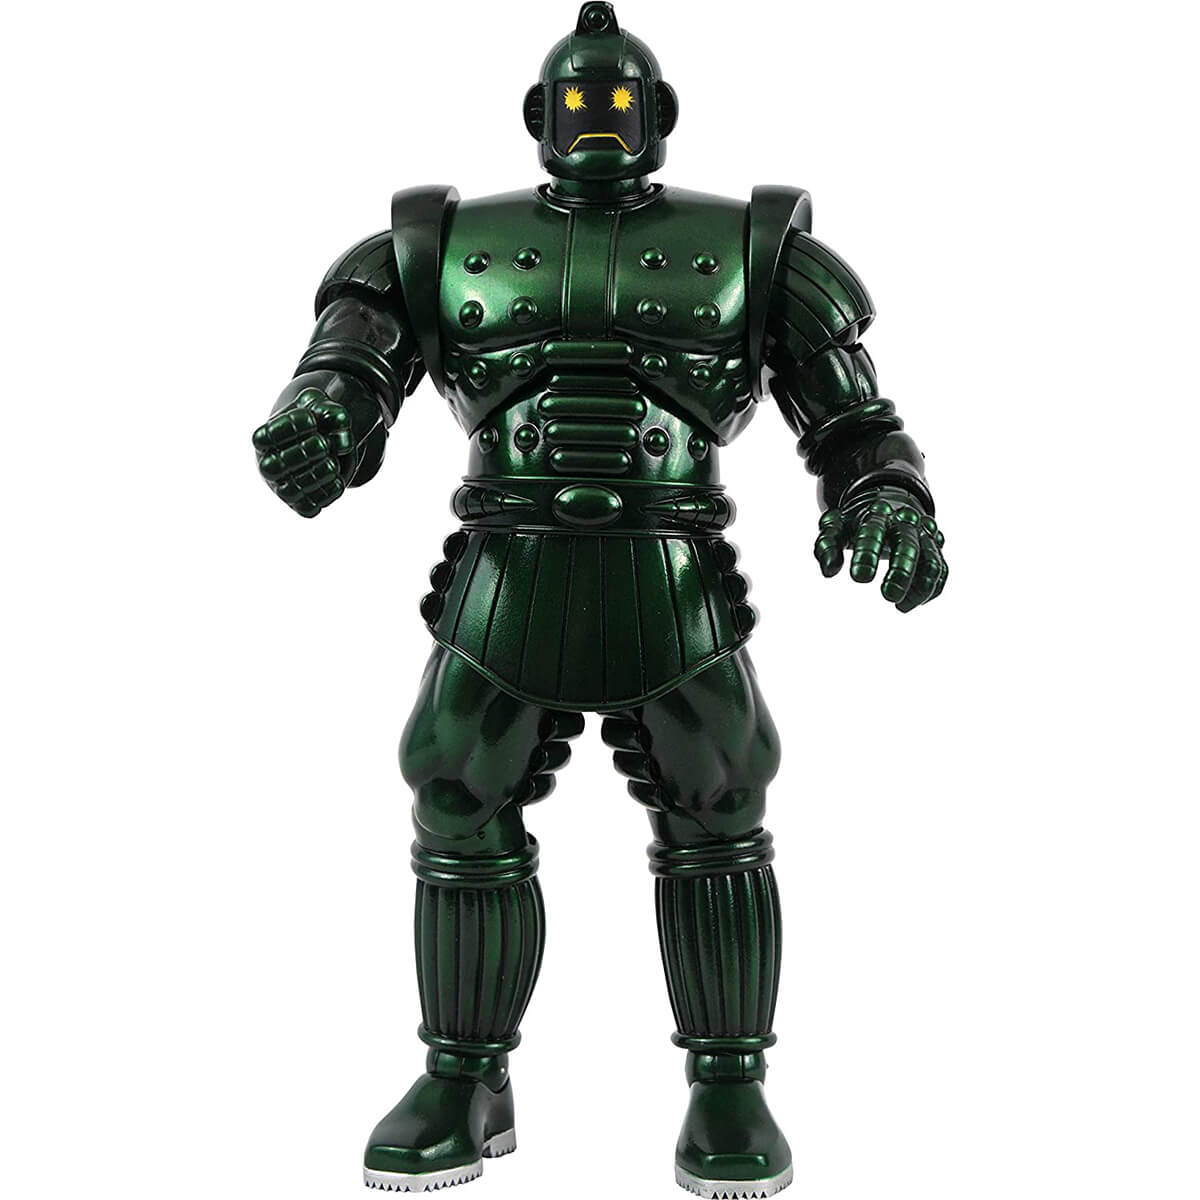 Marvel Select Titanium Man Action Figure